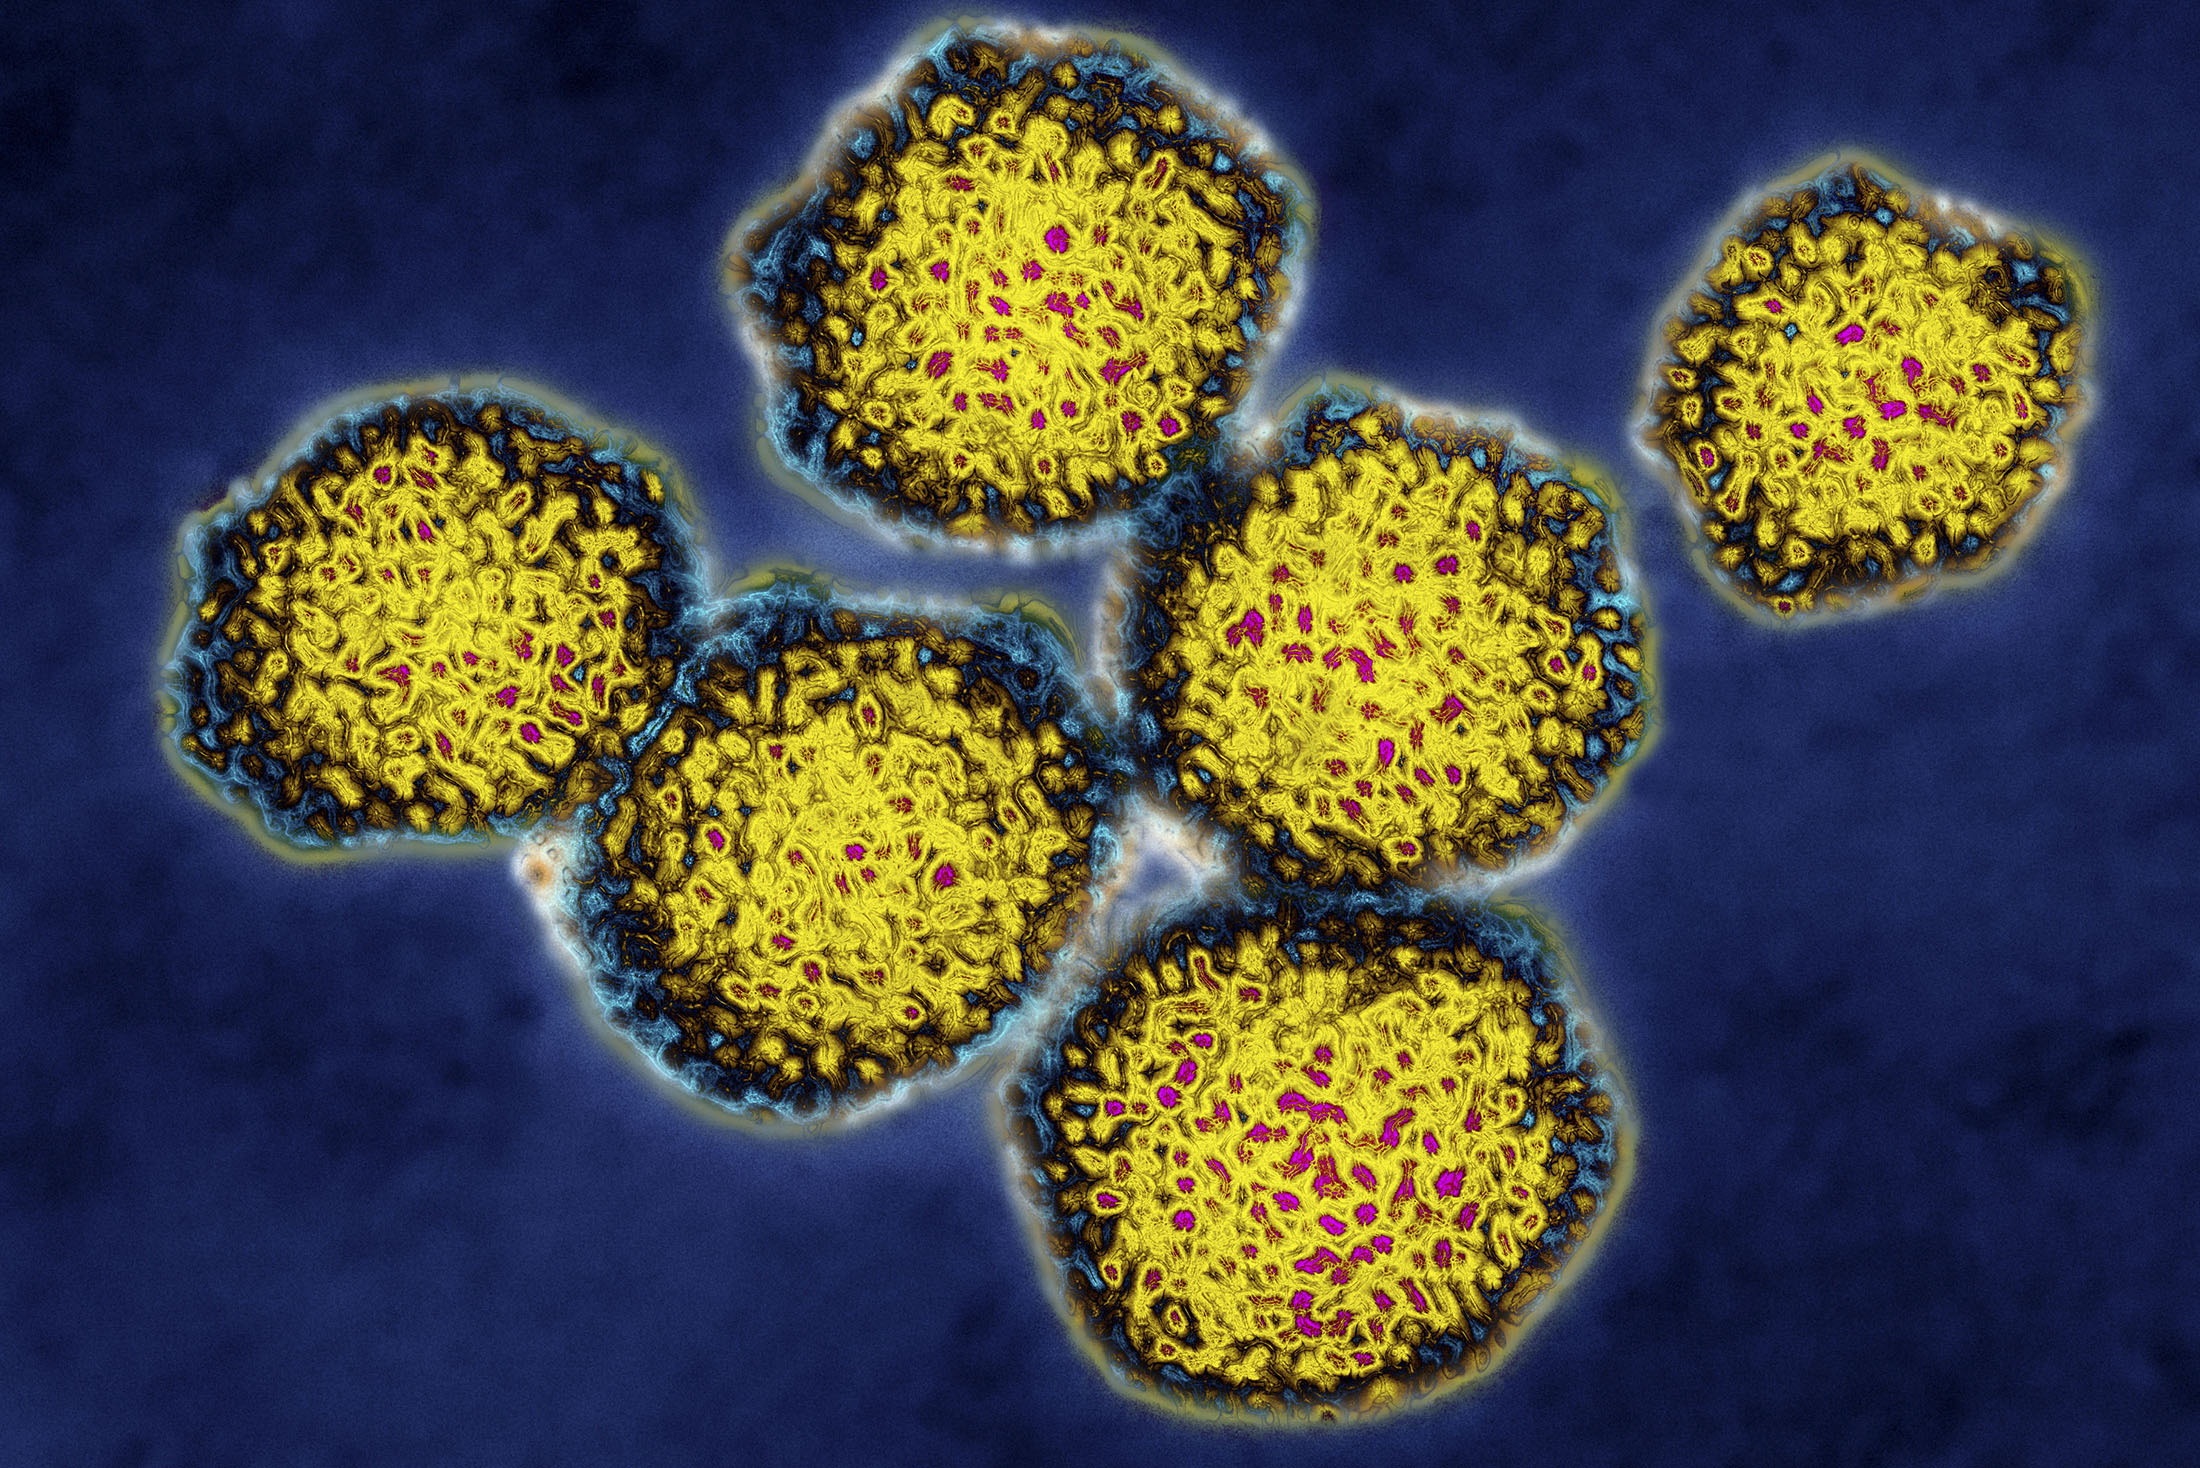 Hepatitis C Virus
